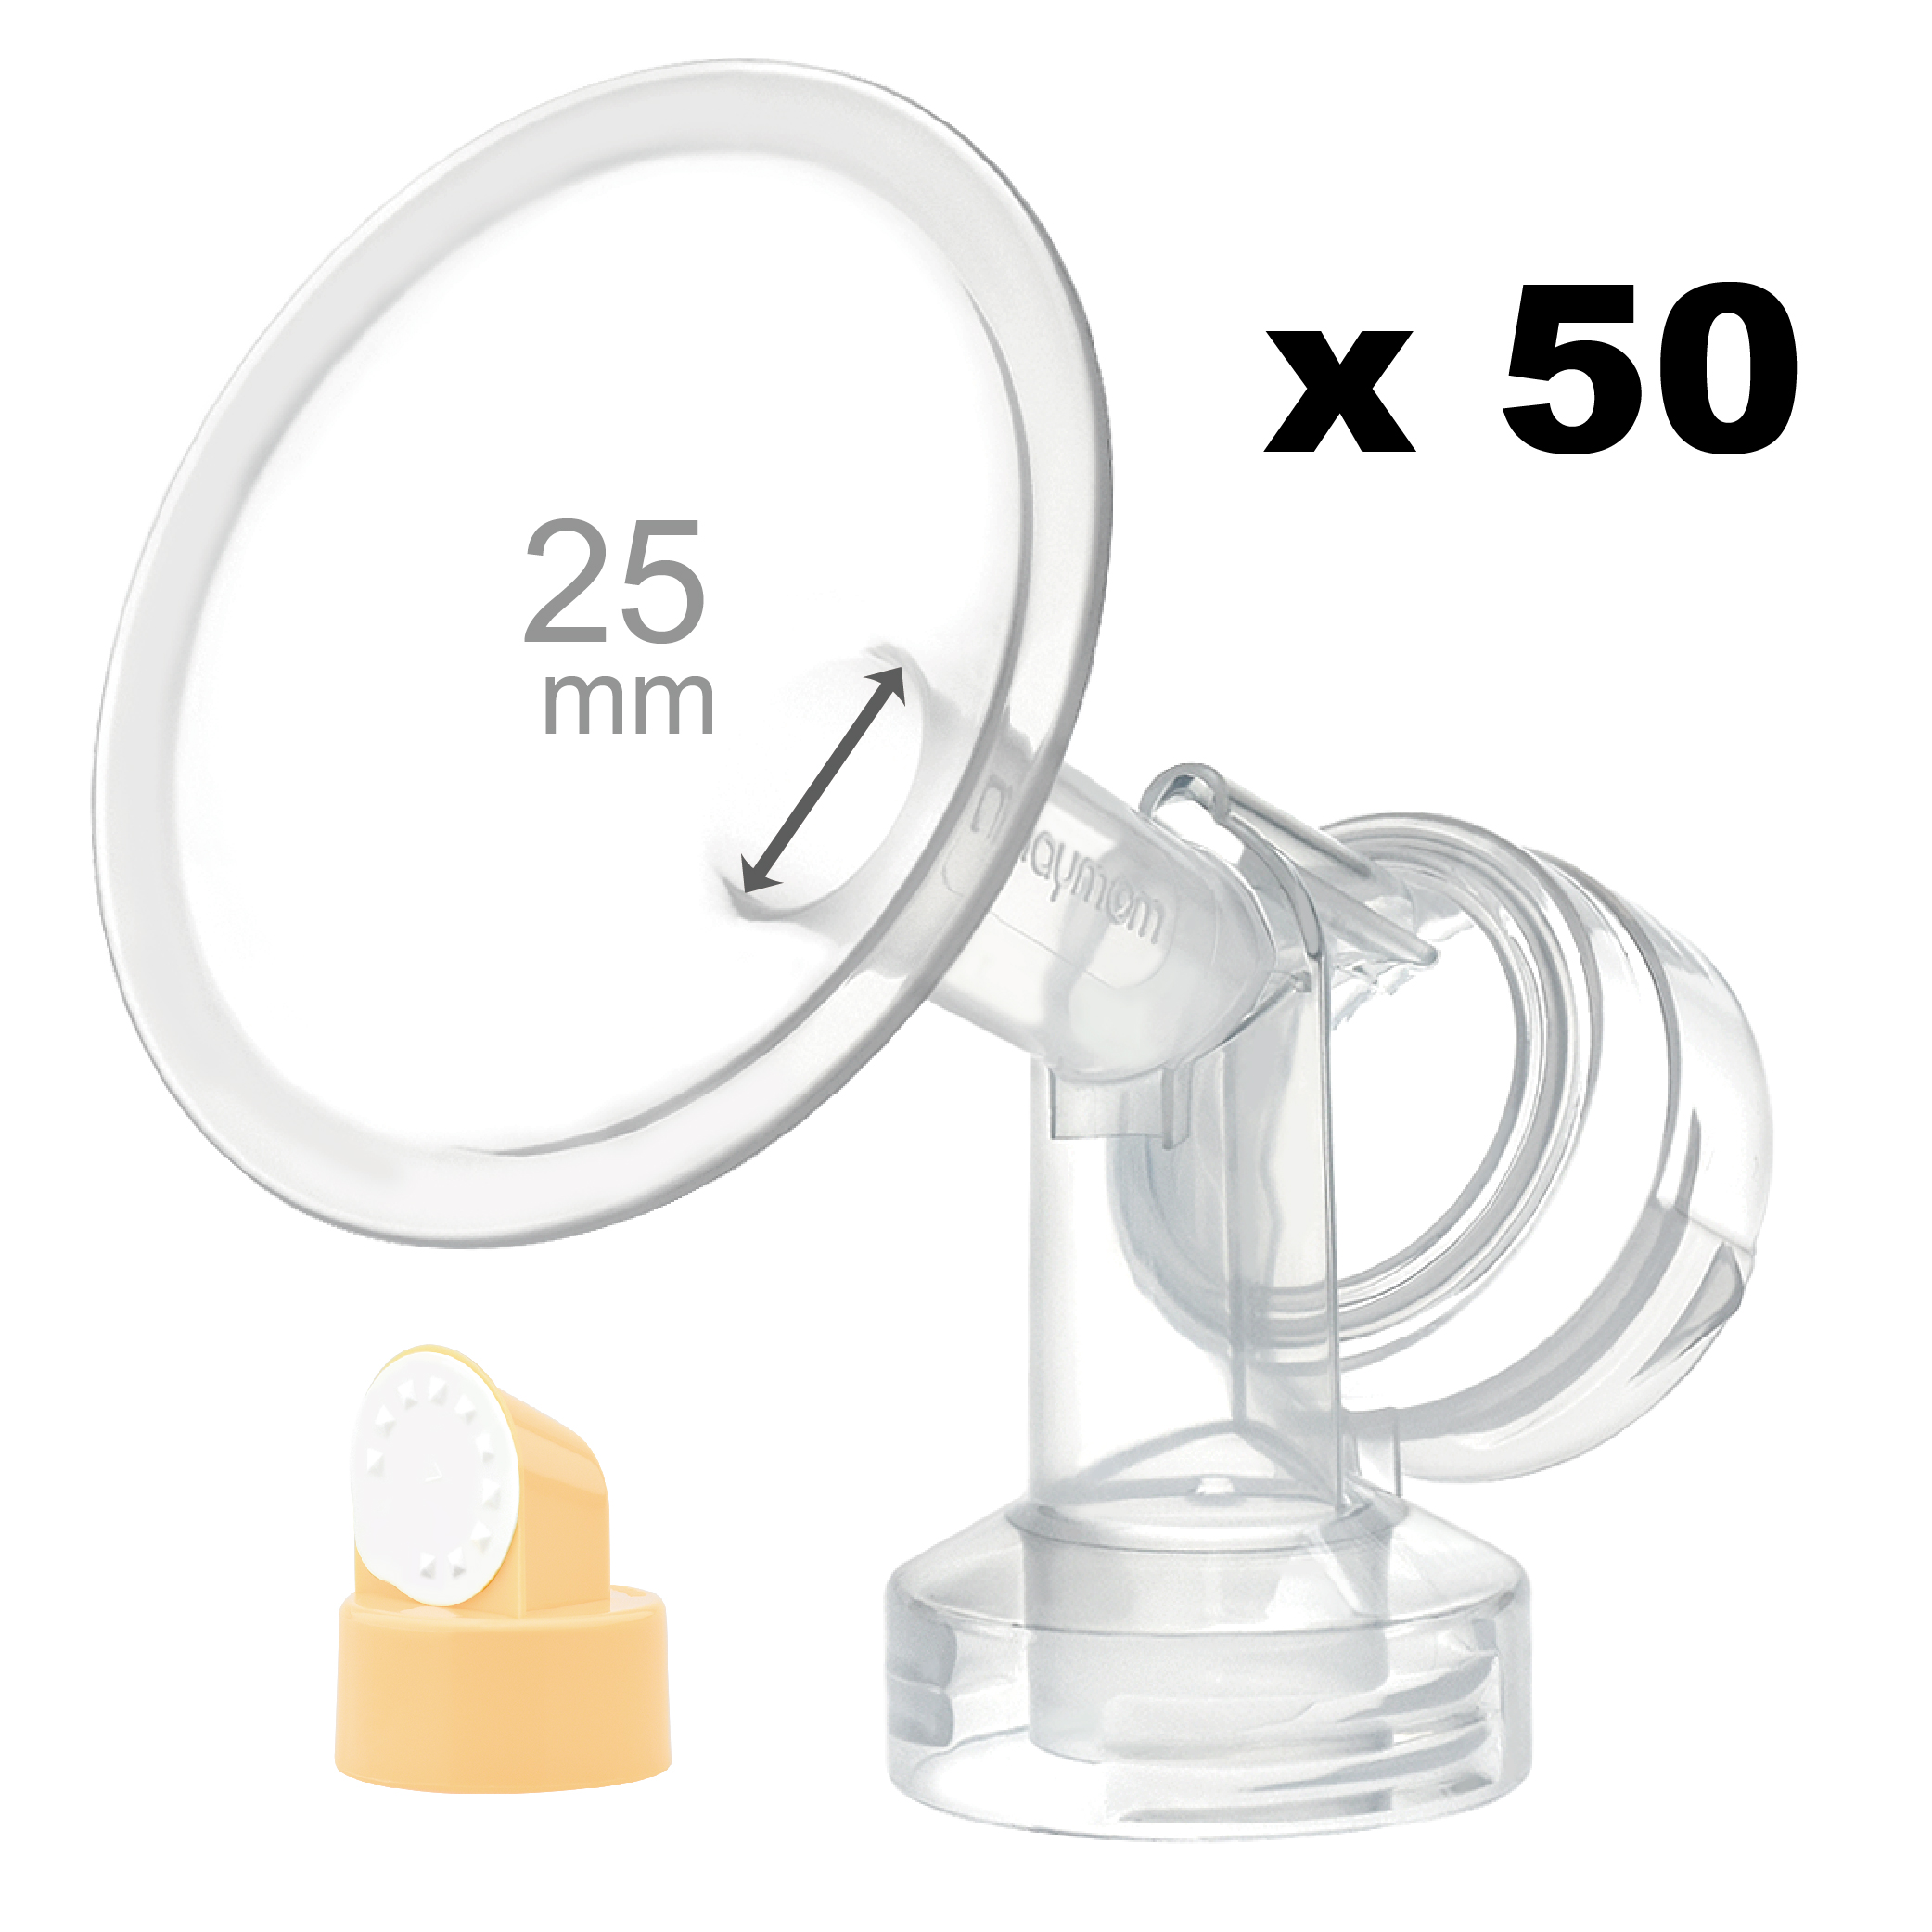 Breastshield (flange) with valve/membrane for Medela, 25 mm, 50 pc; Narrow (Standard) Bottle Neck